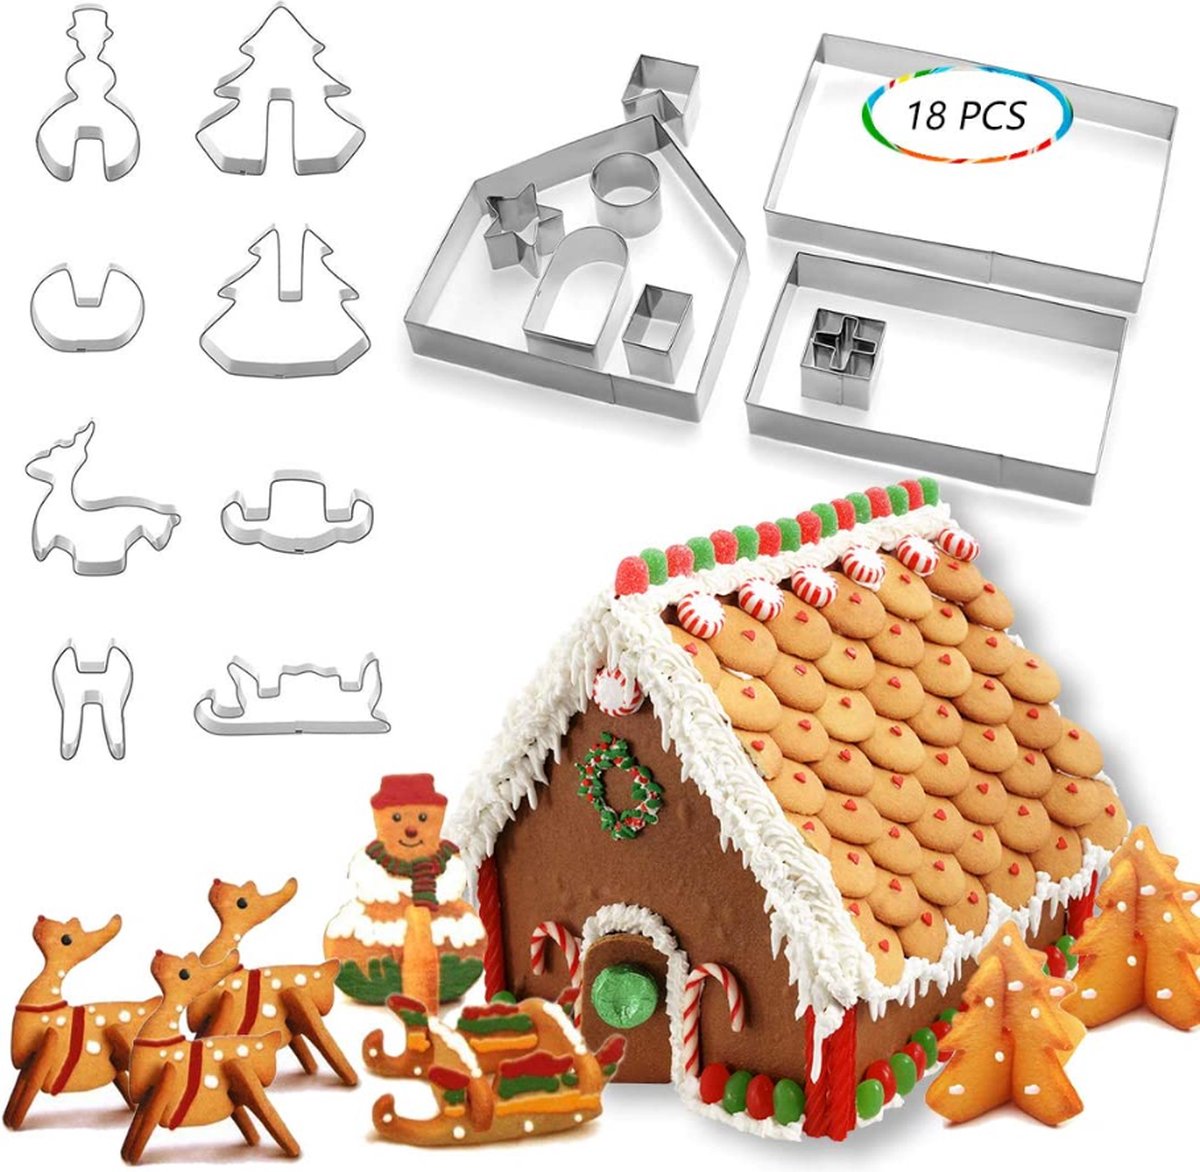 Koekjessnijder – Kerstmis - Kerst Gingerbread House - Roestvrijstalen Koekjessnijder Set 18 stuks - DIY Bakvorm – Kersthuis - Voor Koekjes Bakken - Keuken Accessoires